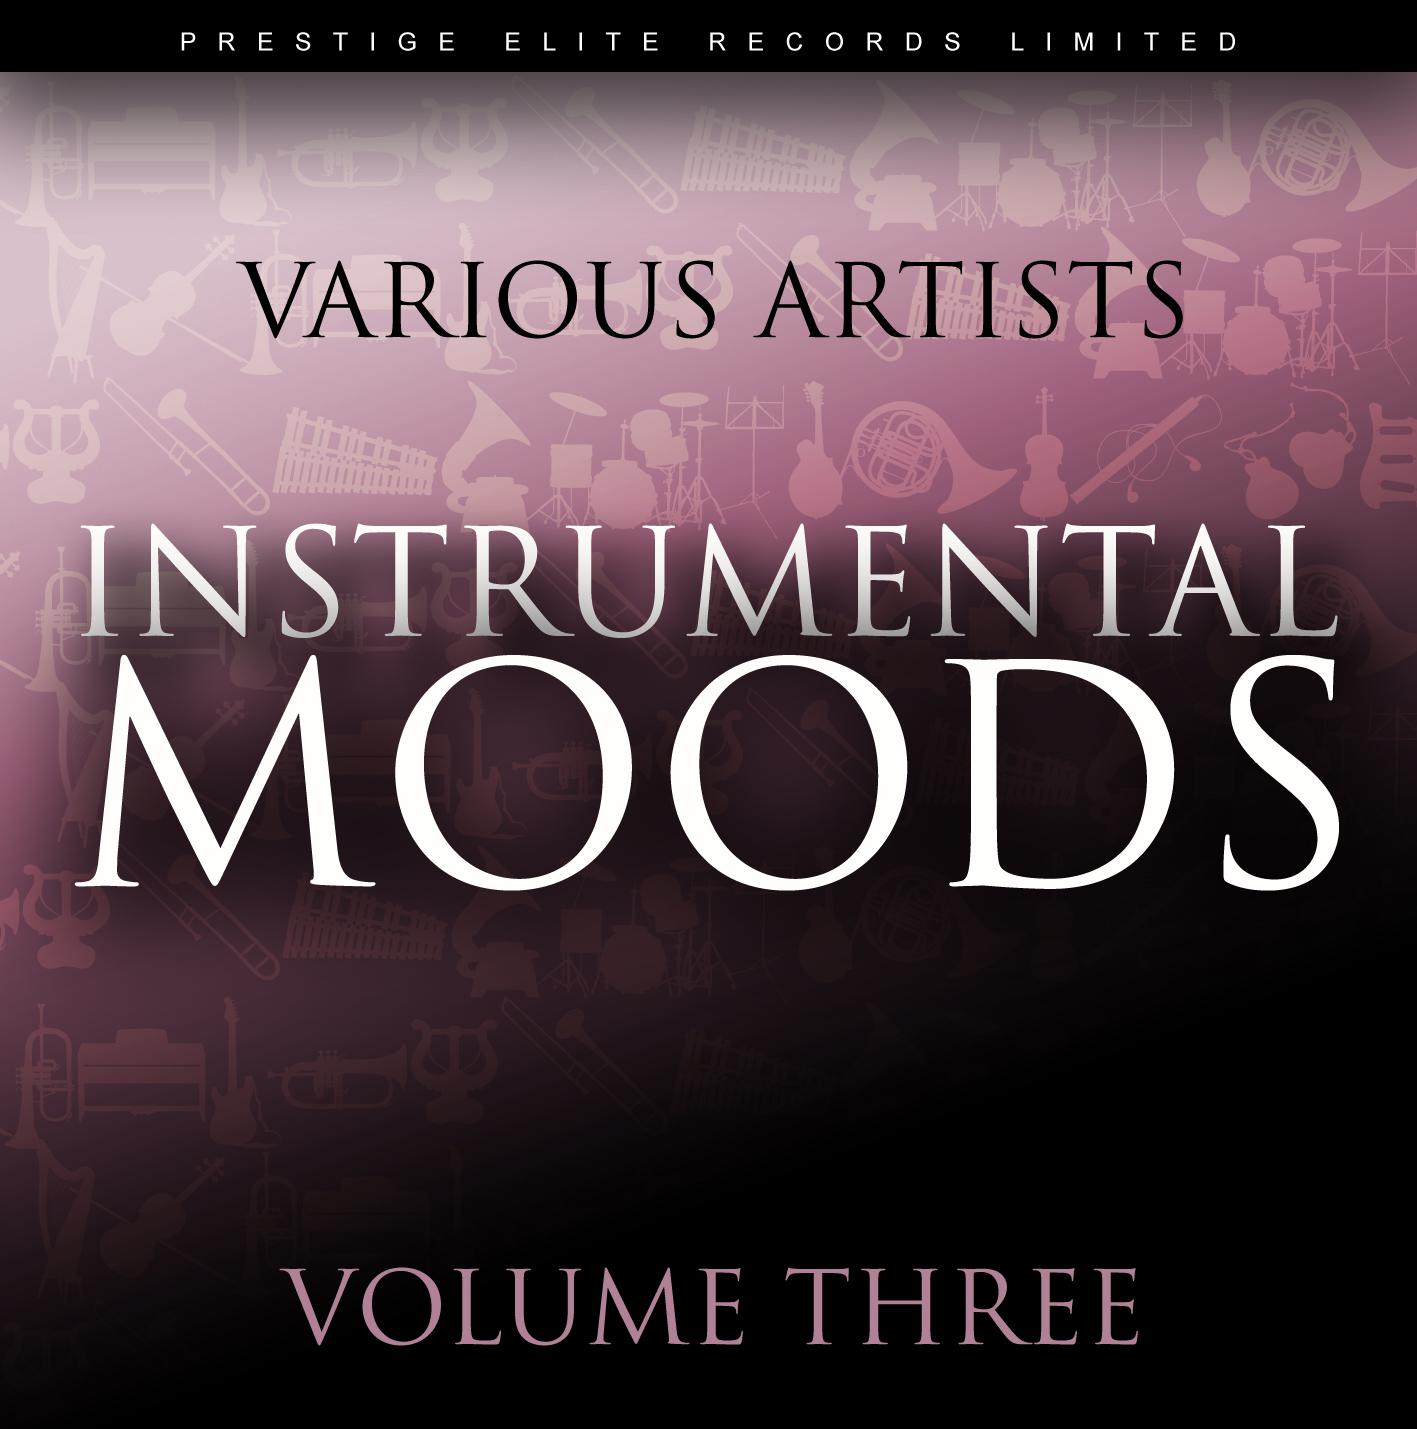 Instrumental Moods Vol 3